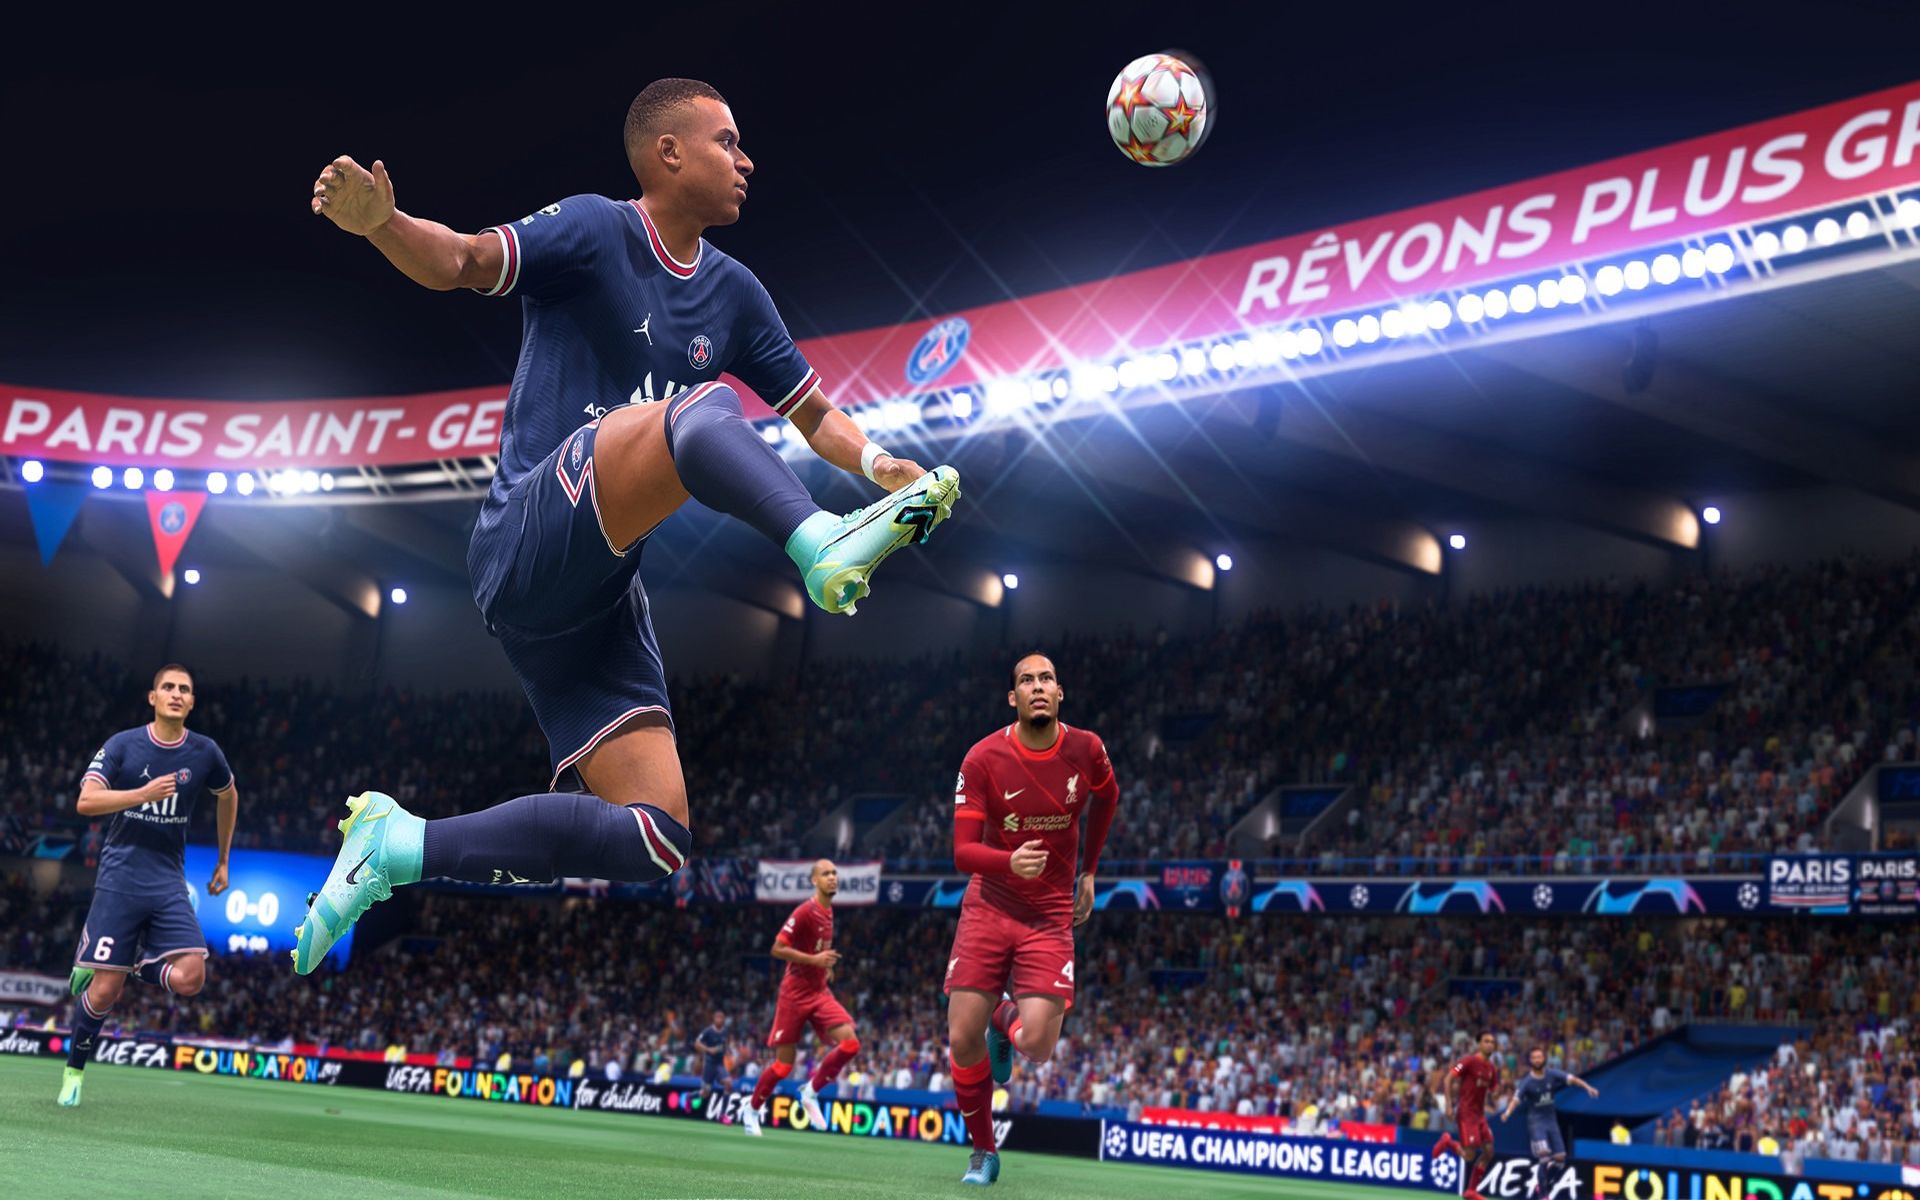 FIFA 22 sunucu bağlantı sorunu nedir, nasıl çözülür?